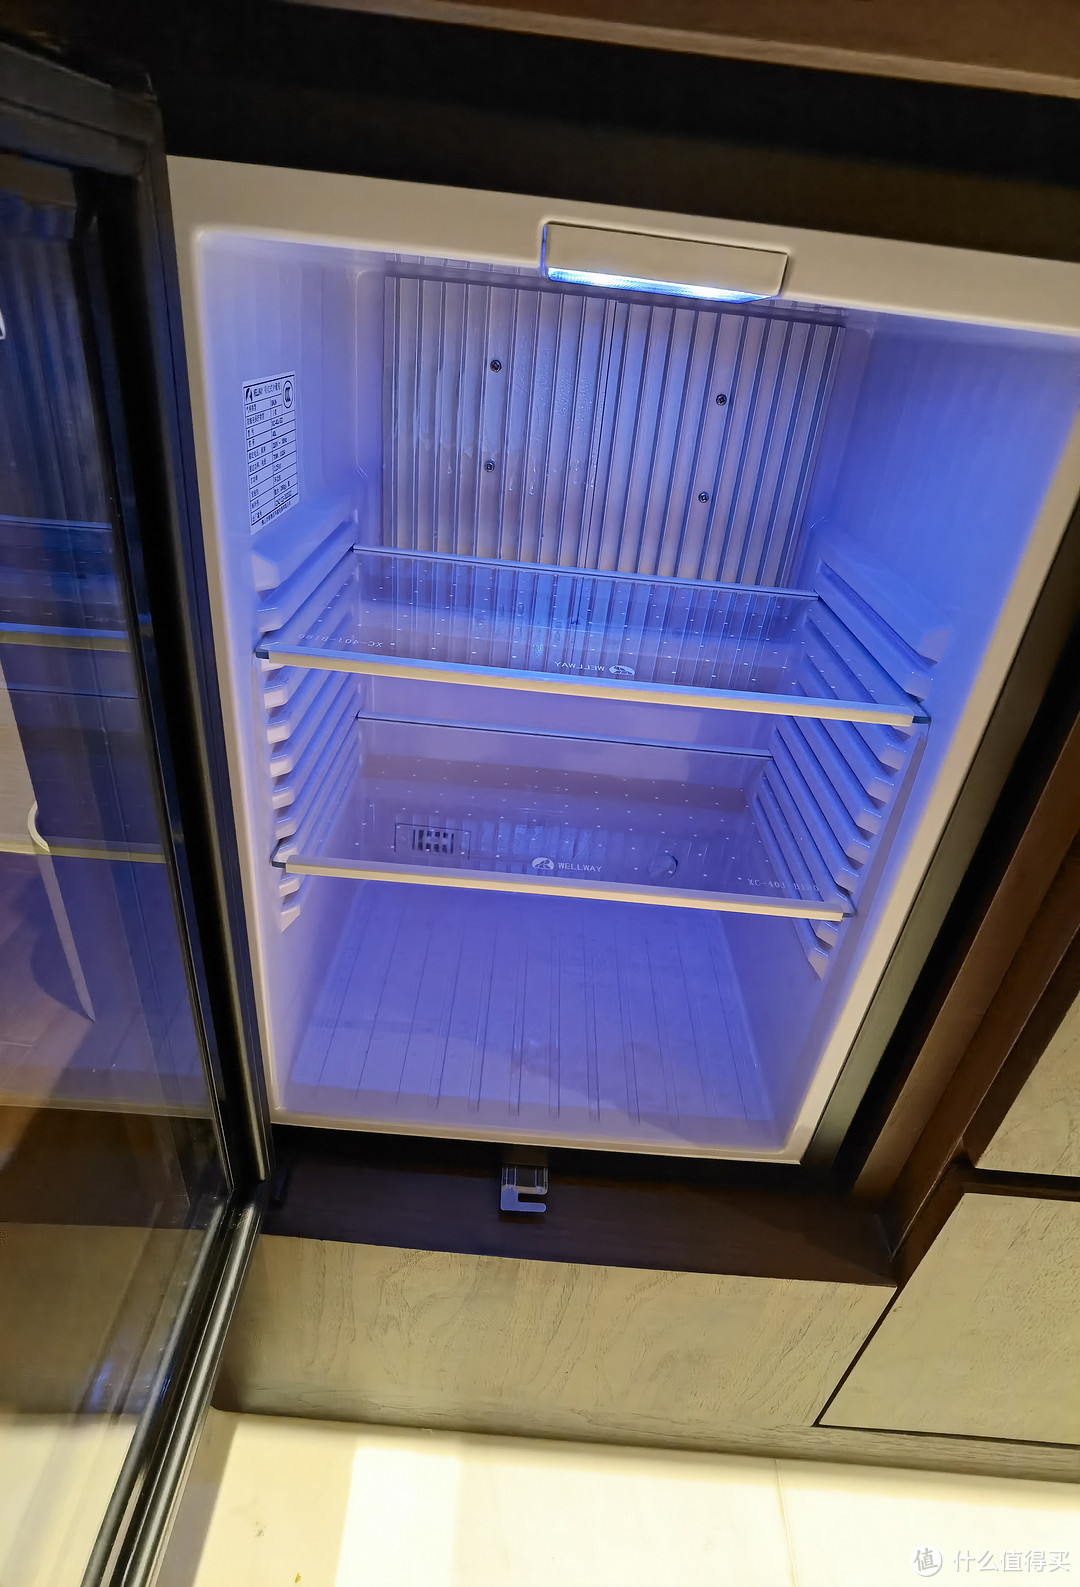 MINI吧的冰箱是空的